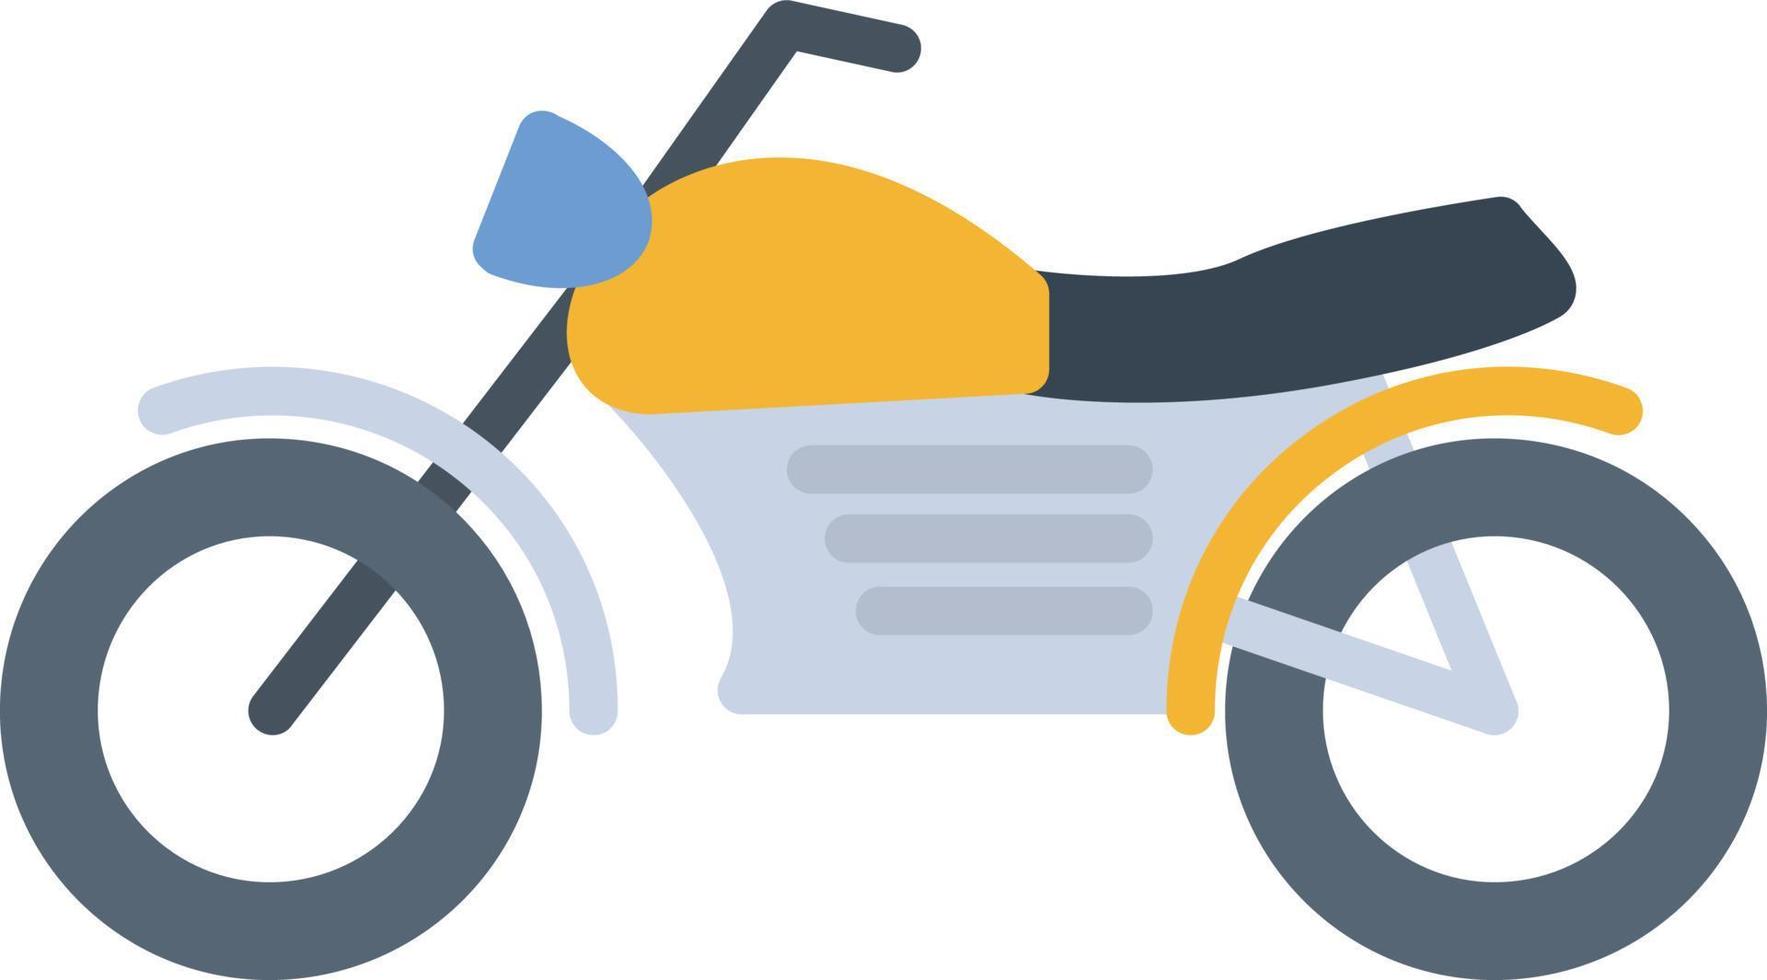 motorcykel platt ikon vektor